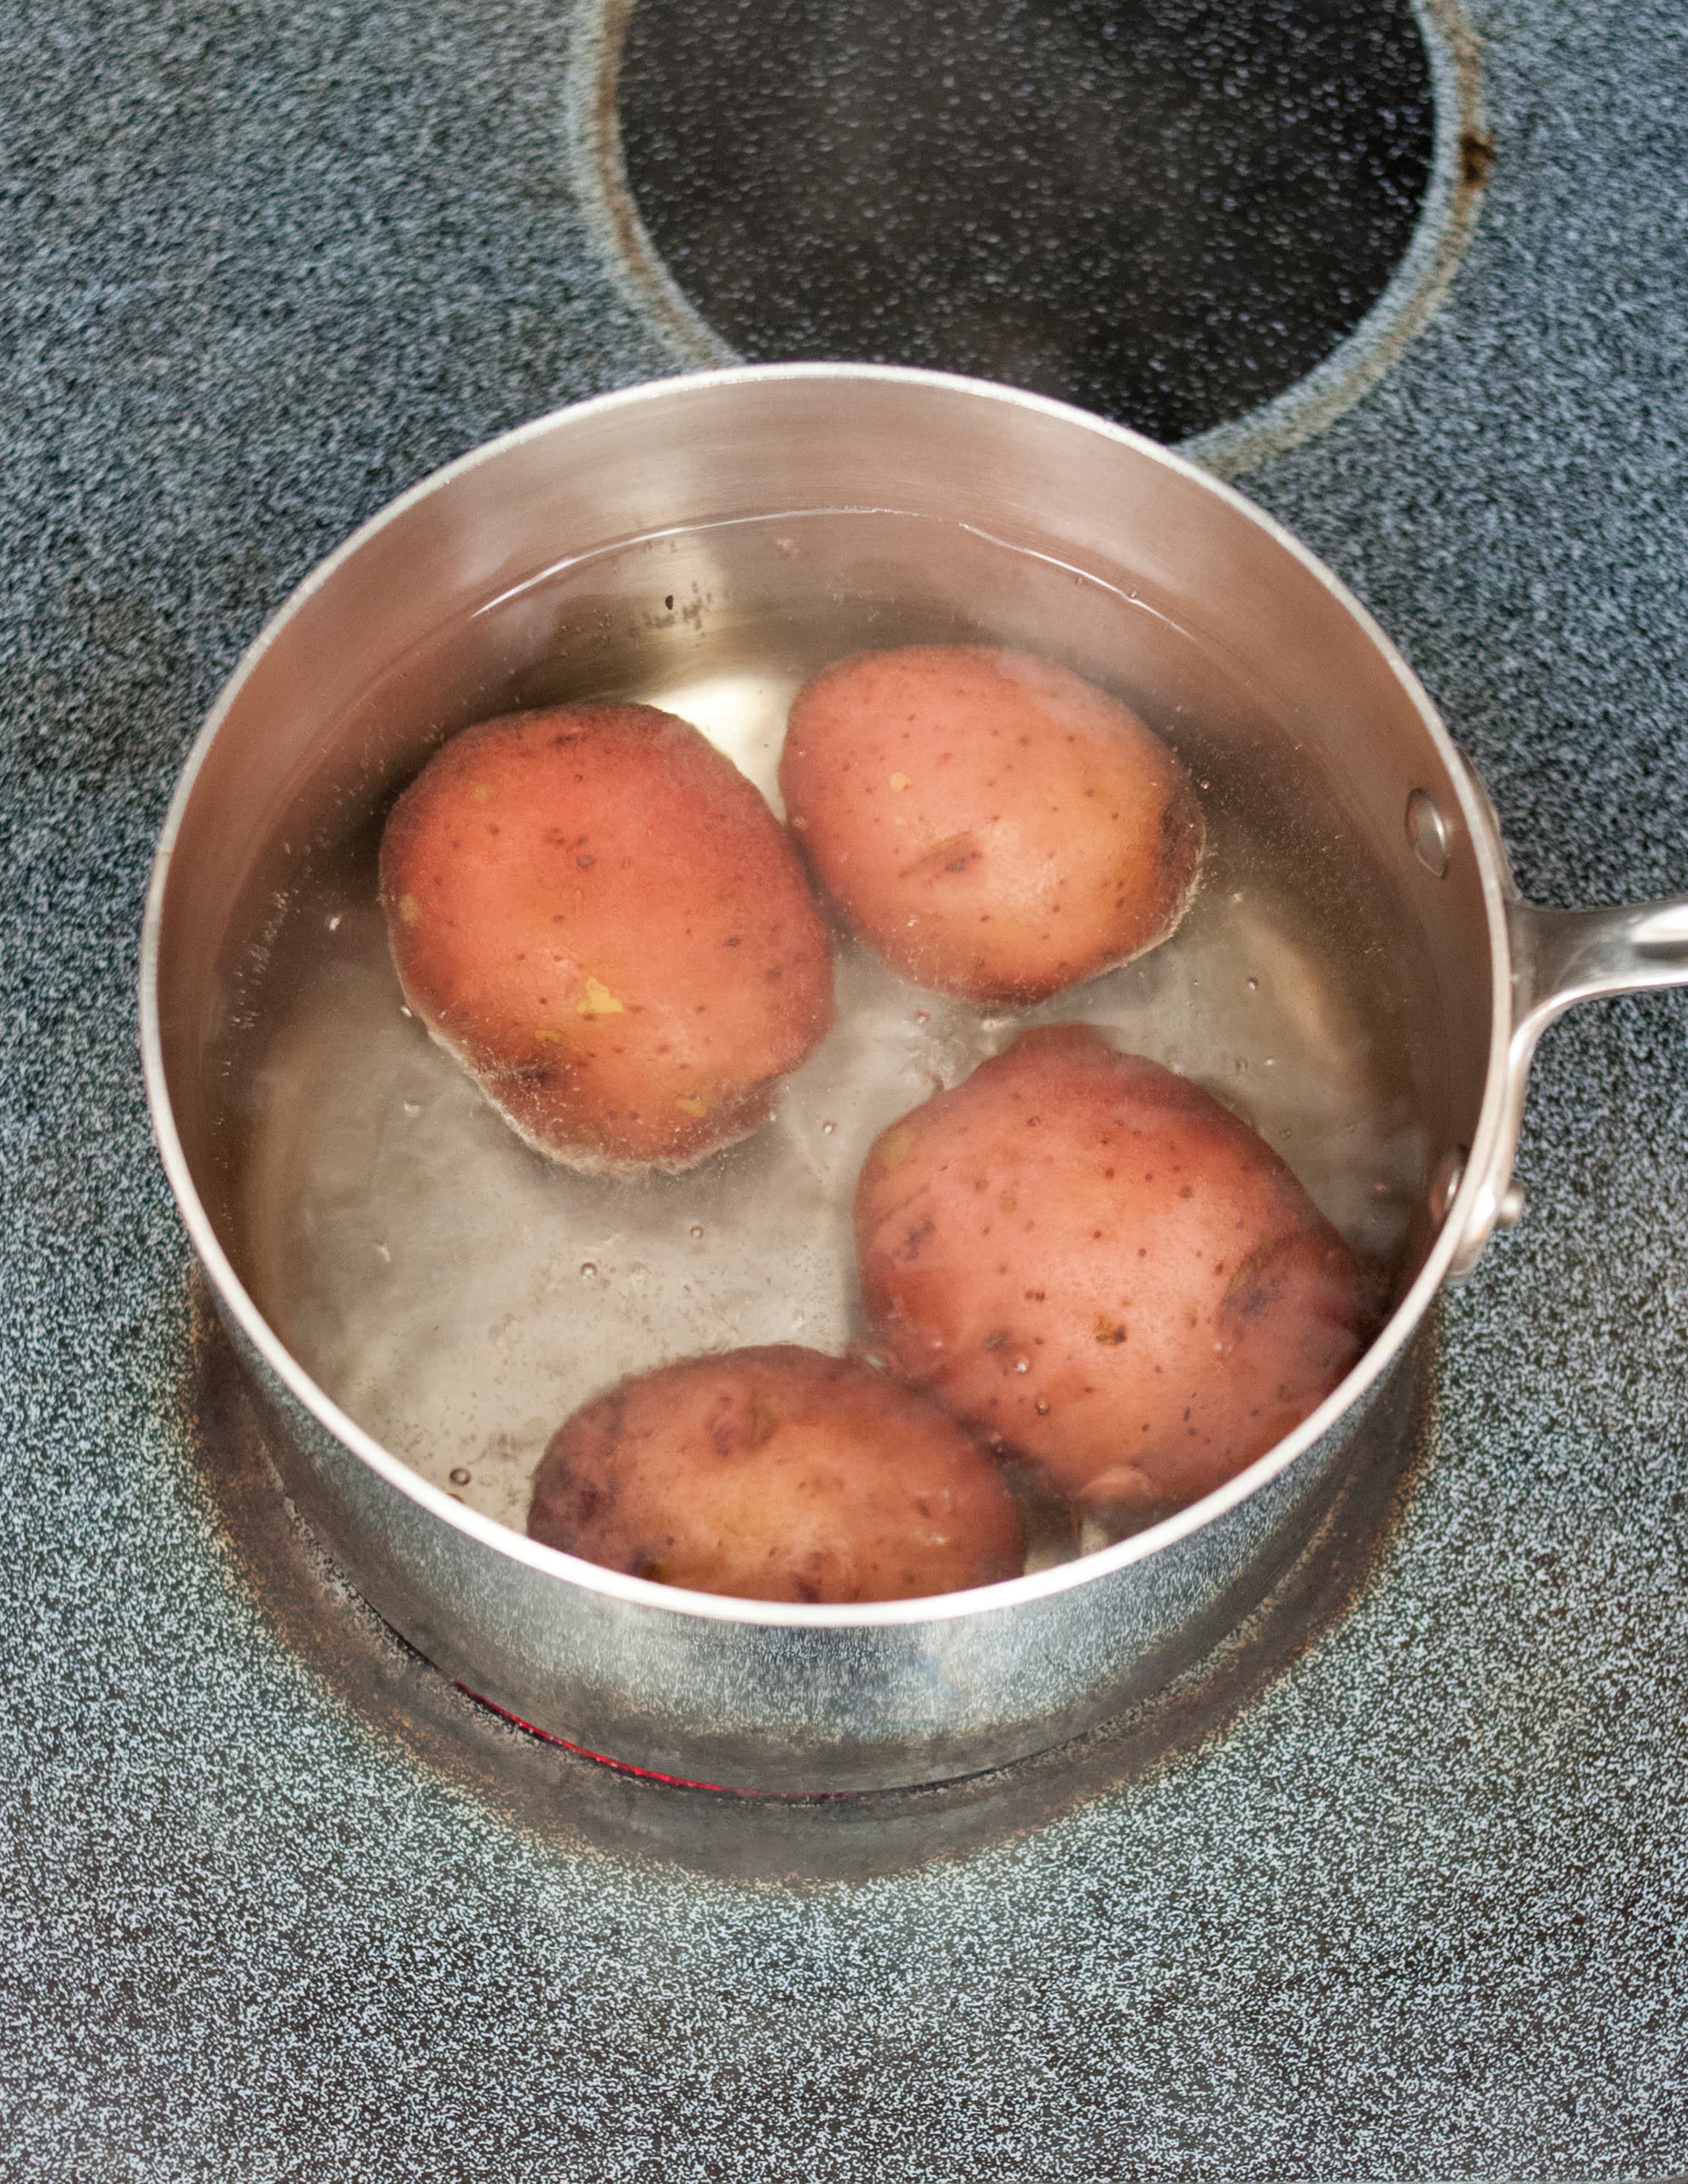 Картошку варить в холодной или горячей воде